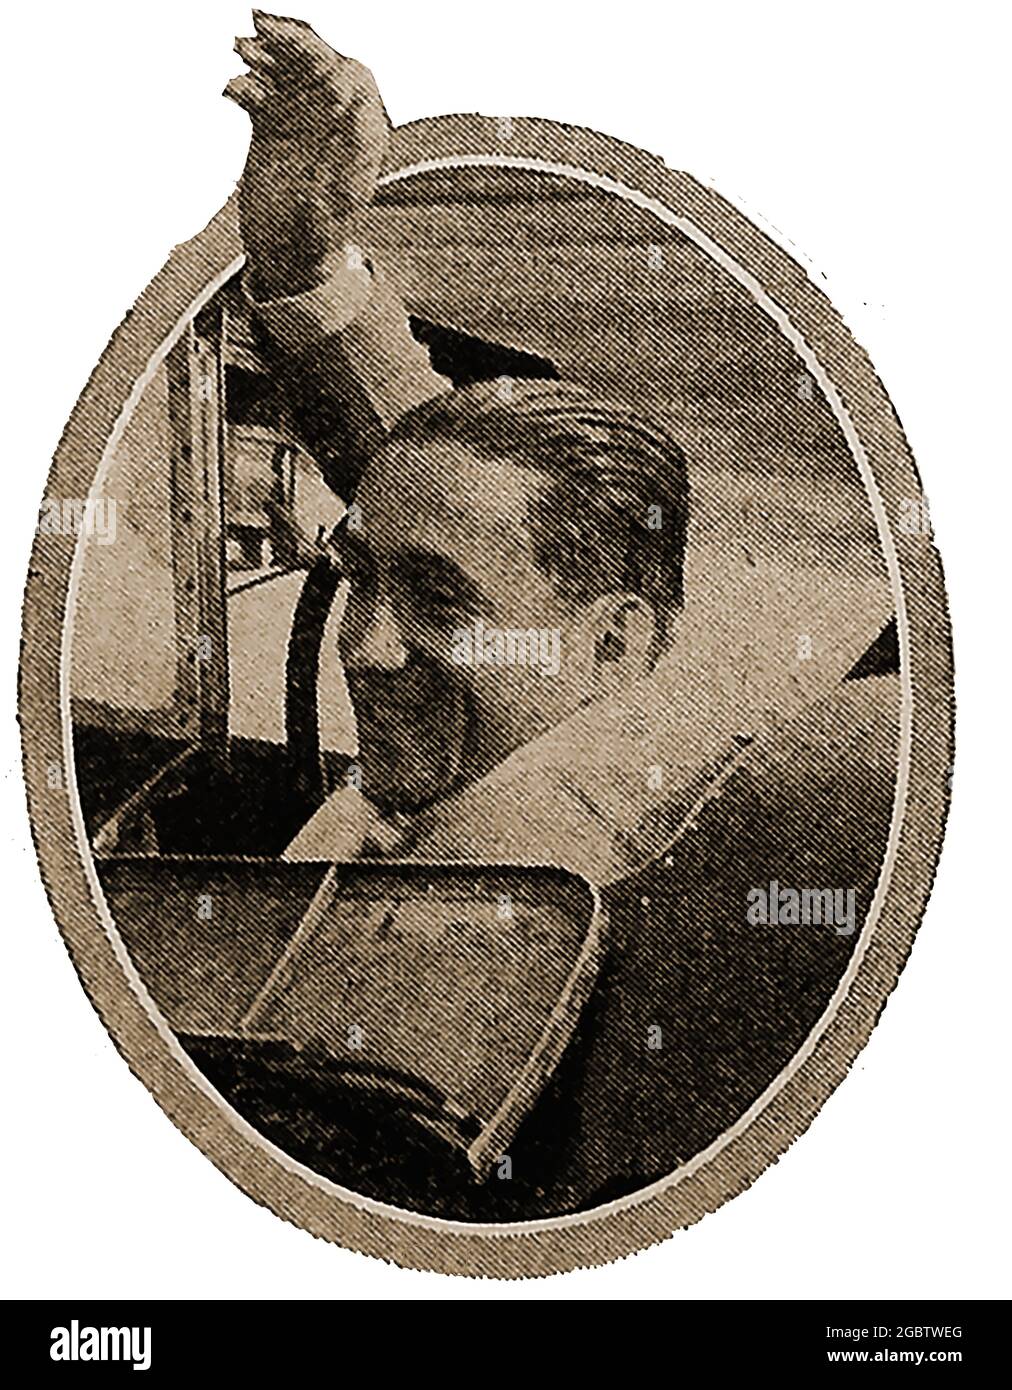 Ein Presseportrait von 1929 über den französischen Flugpionier Dieudonne Costes auf seinem Flug von Paris nach Texas. Costes (1892 – 1973) war ein französischer Flieger, der eine Reihe von Flugstreckenrekorden aufgestellt hatte und während des Ersten Weltkriegs als Jagdtass anerkannt wurde. Am 2. Mai 1928 Er erhielt mehrere Auszeichnungen, darunter das Distinguished Flying Cross durch einen Sonderakt des Kongresses der Vereinigten Staaten in Anerkennung seines historischen Weltfluges Stockfoto